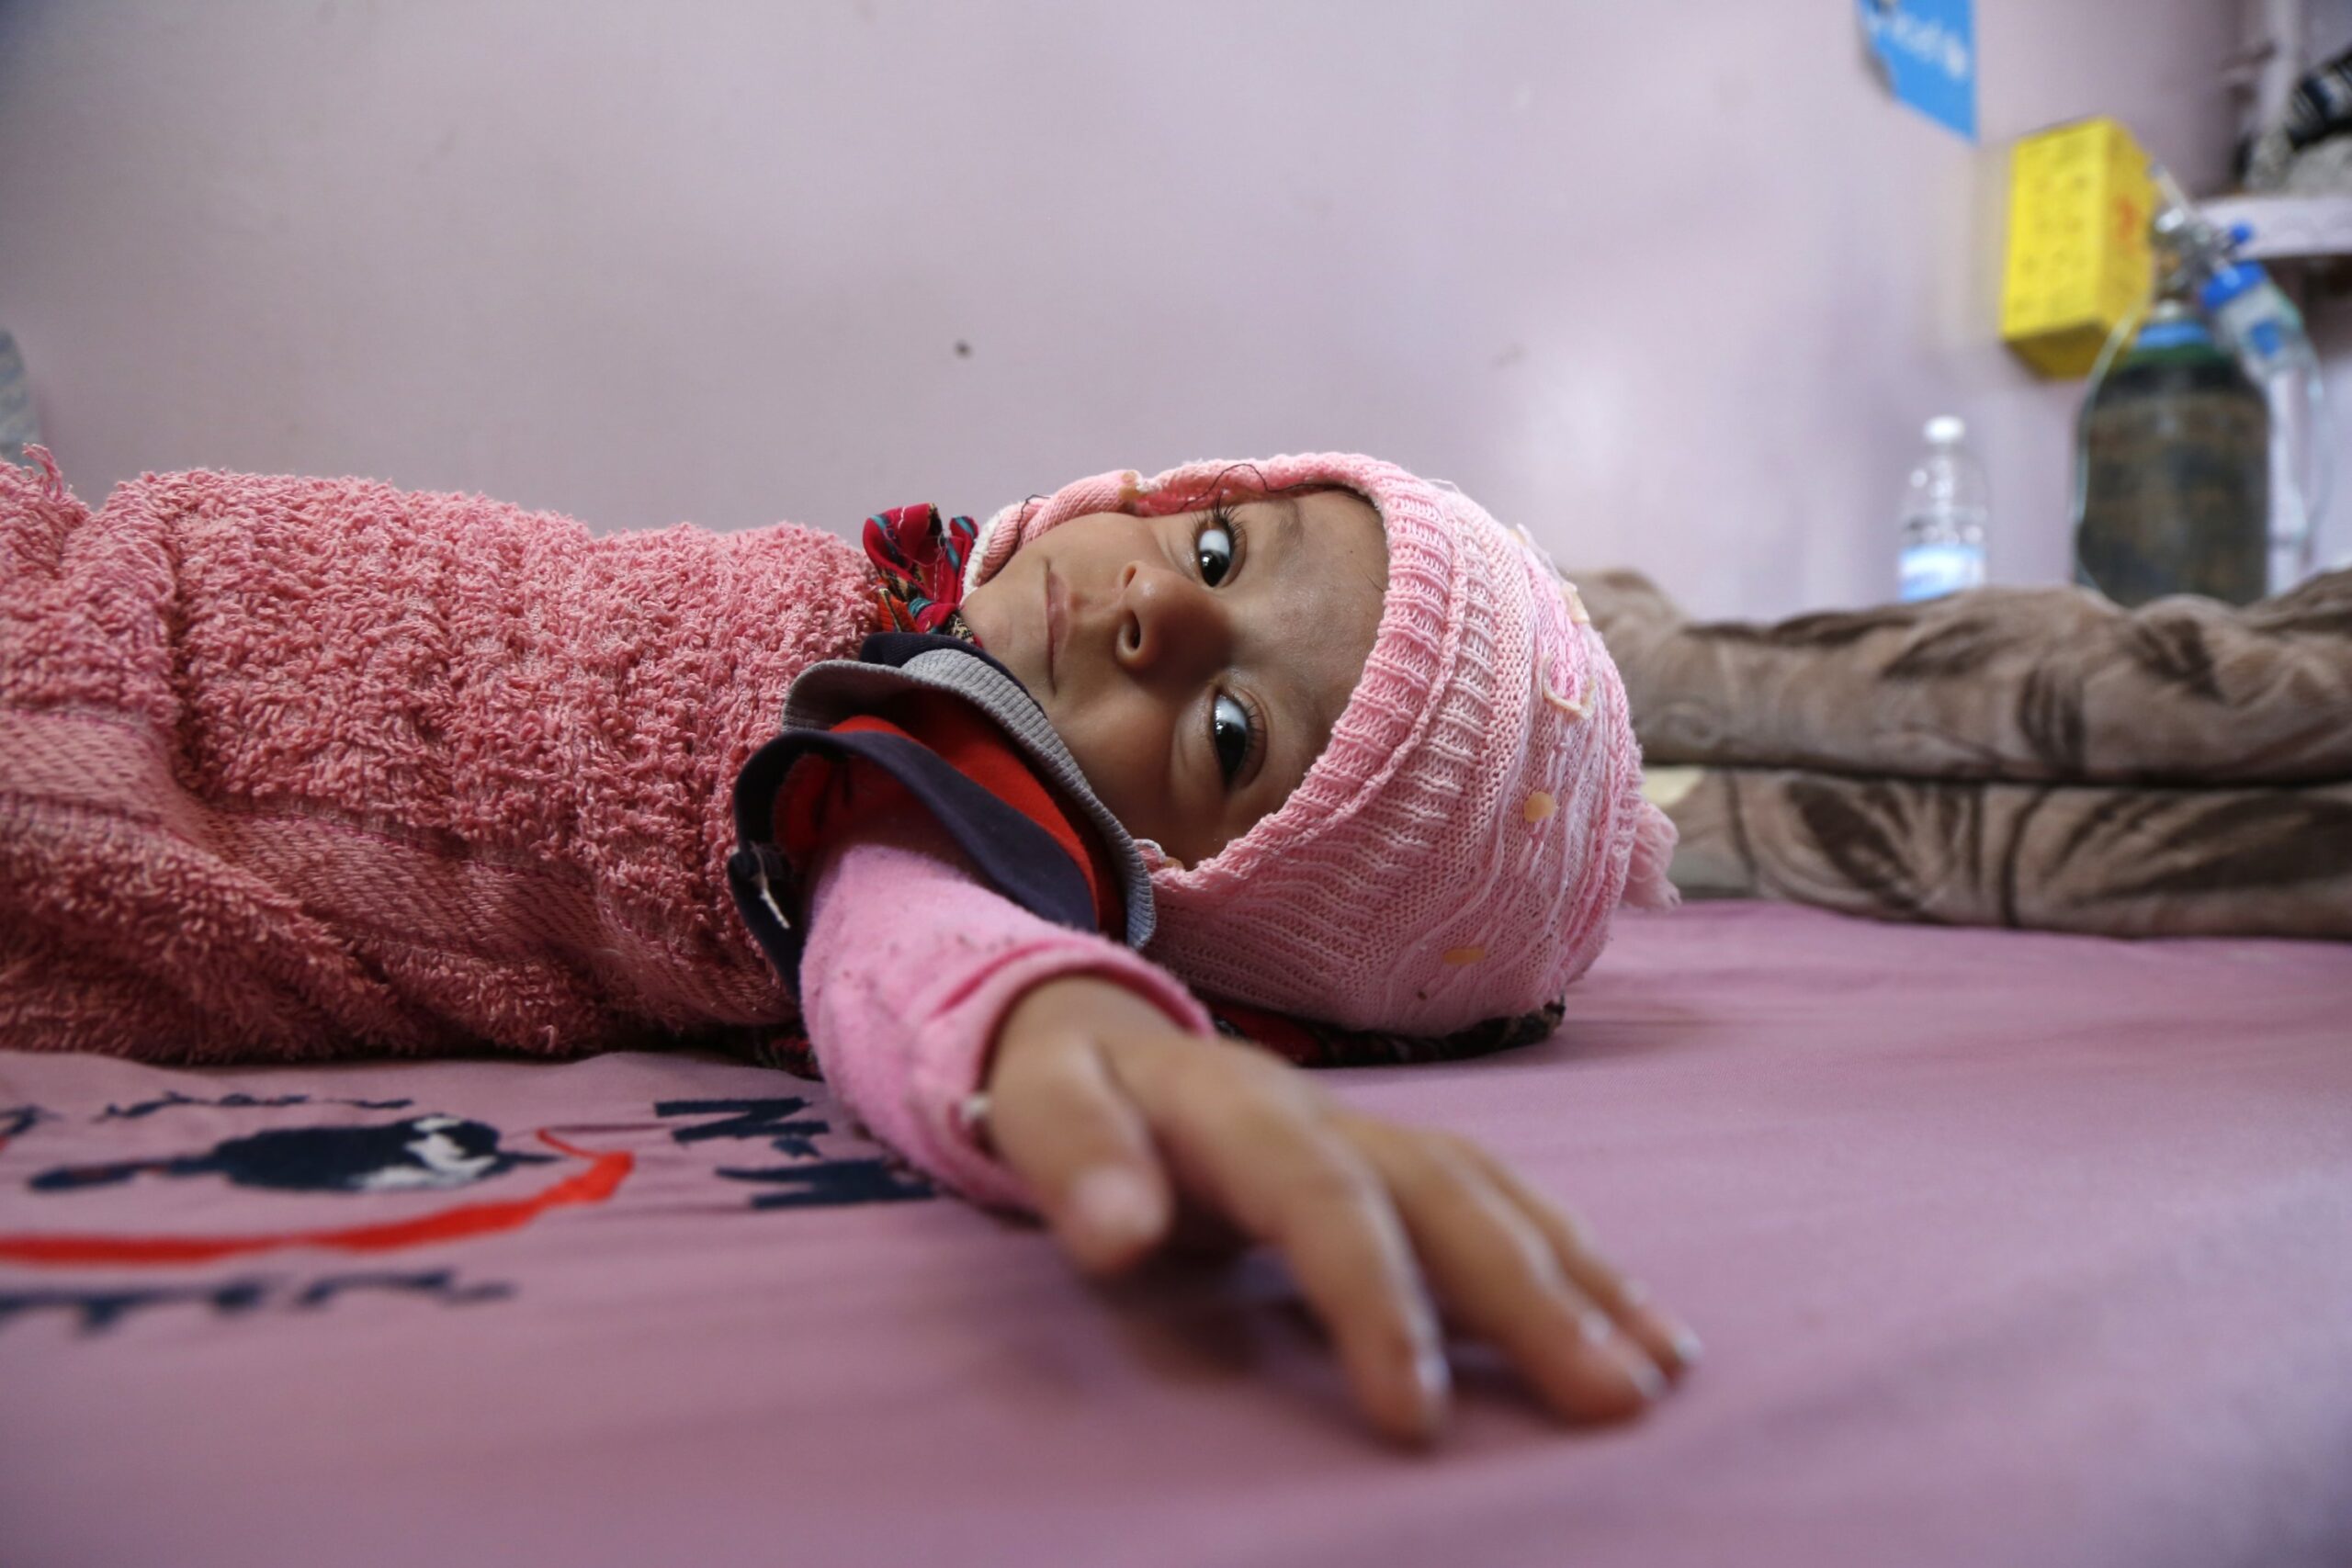 Morocco contributes $1 million to humanitarian response plan in Yemen